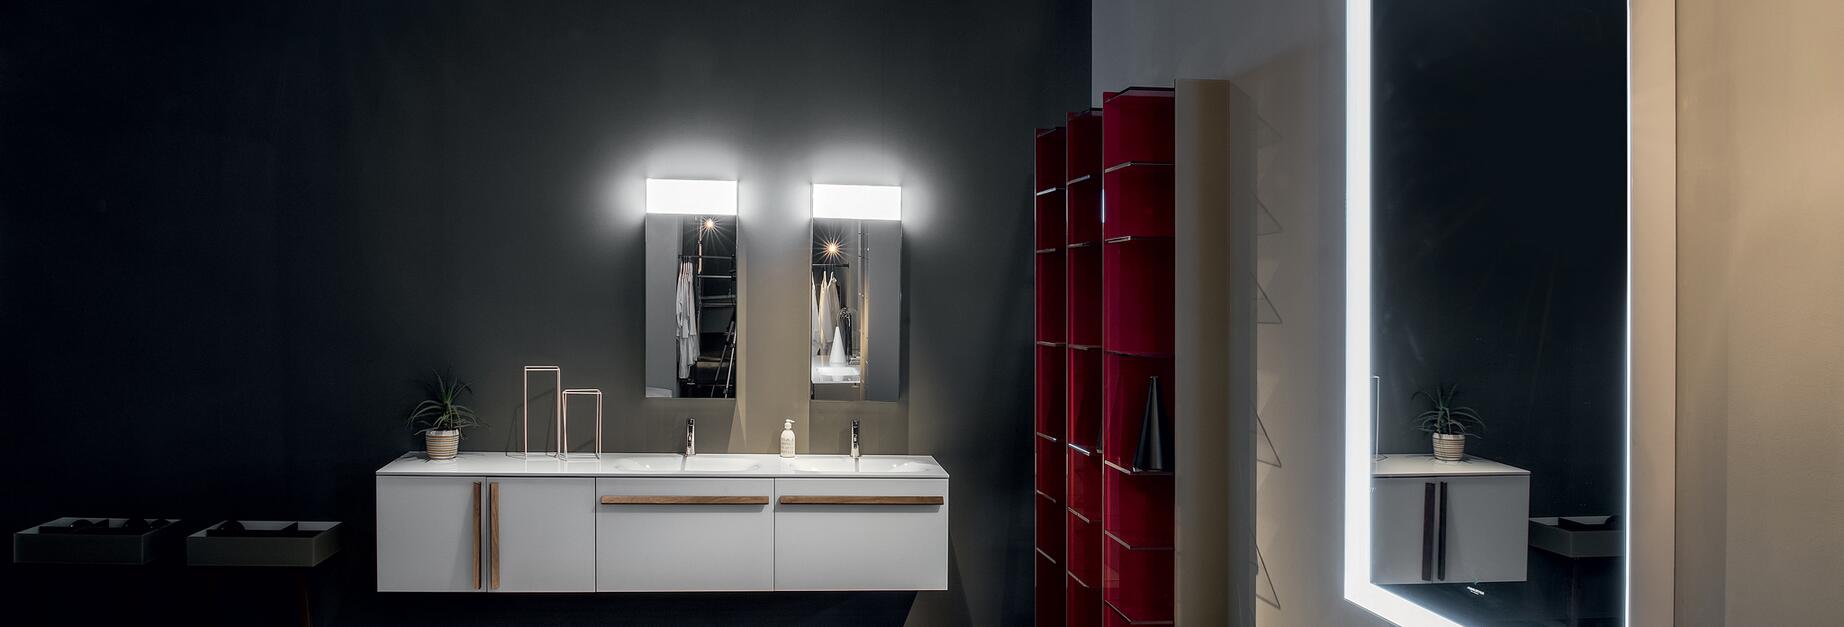 L'éclairage salle de bains LED – conseils et idées élégantes